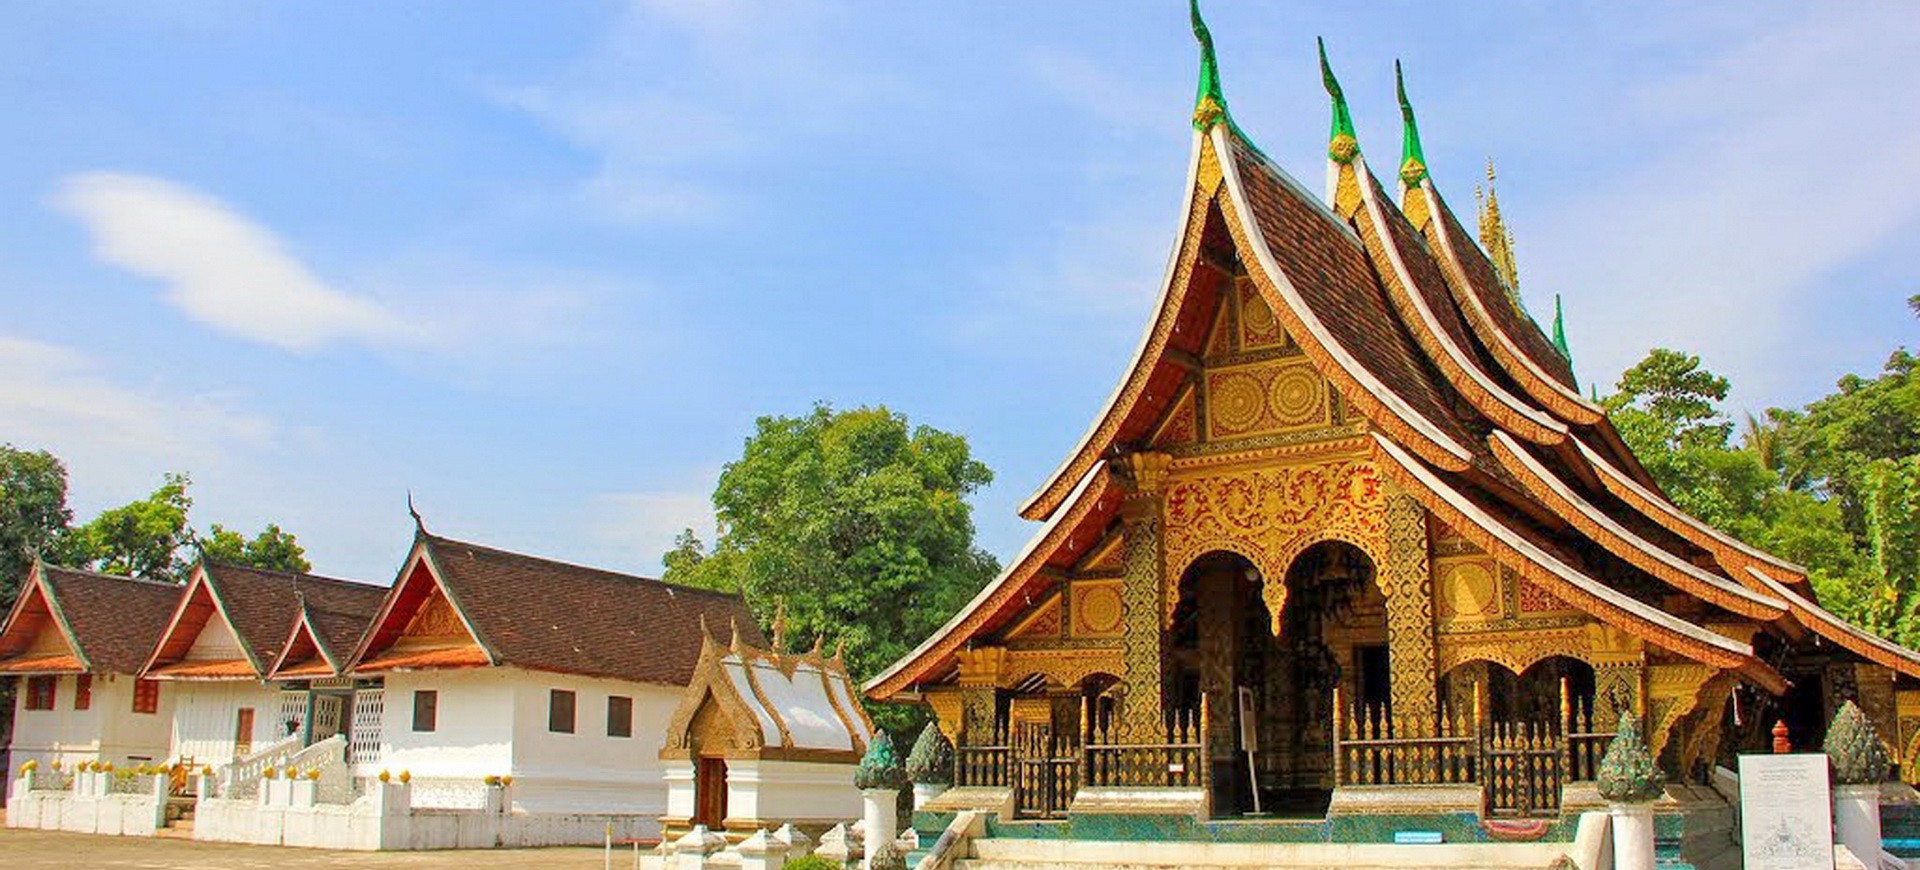 Laos Luang Prabang Wat Xieng Thong